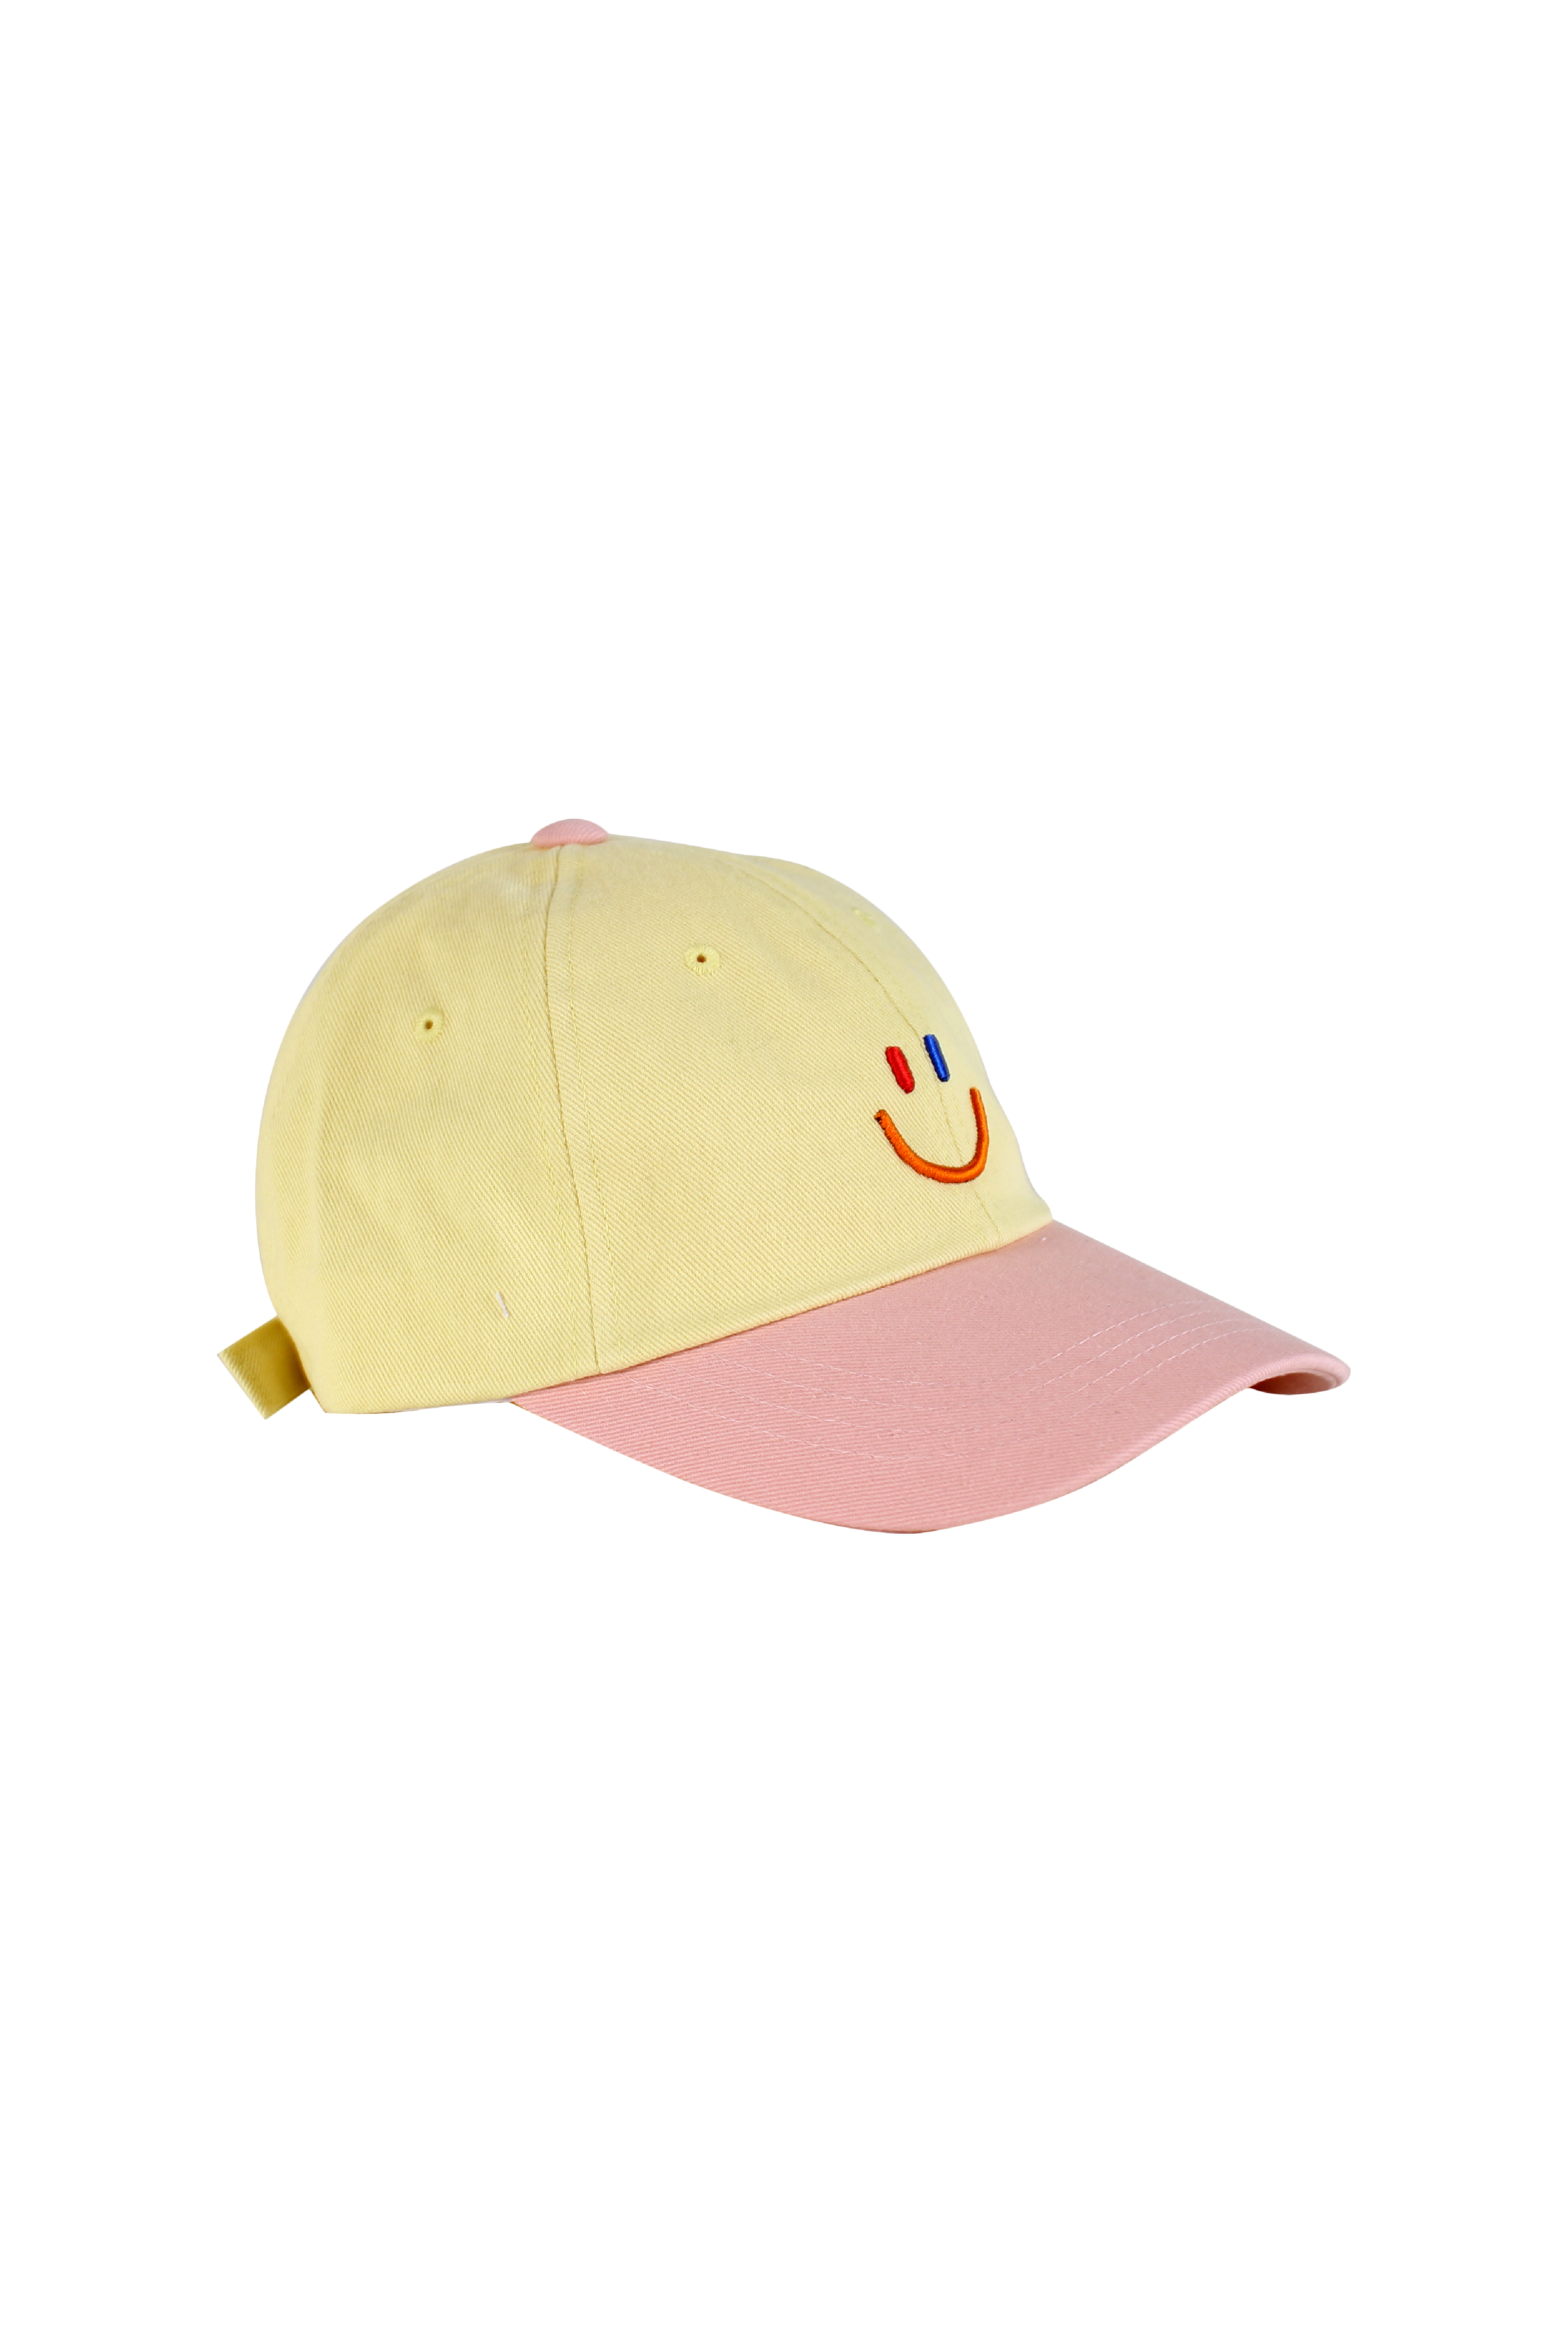 LaLa Ball Cap [Yellow]